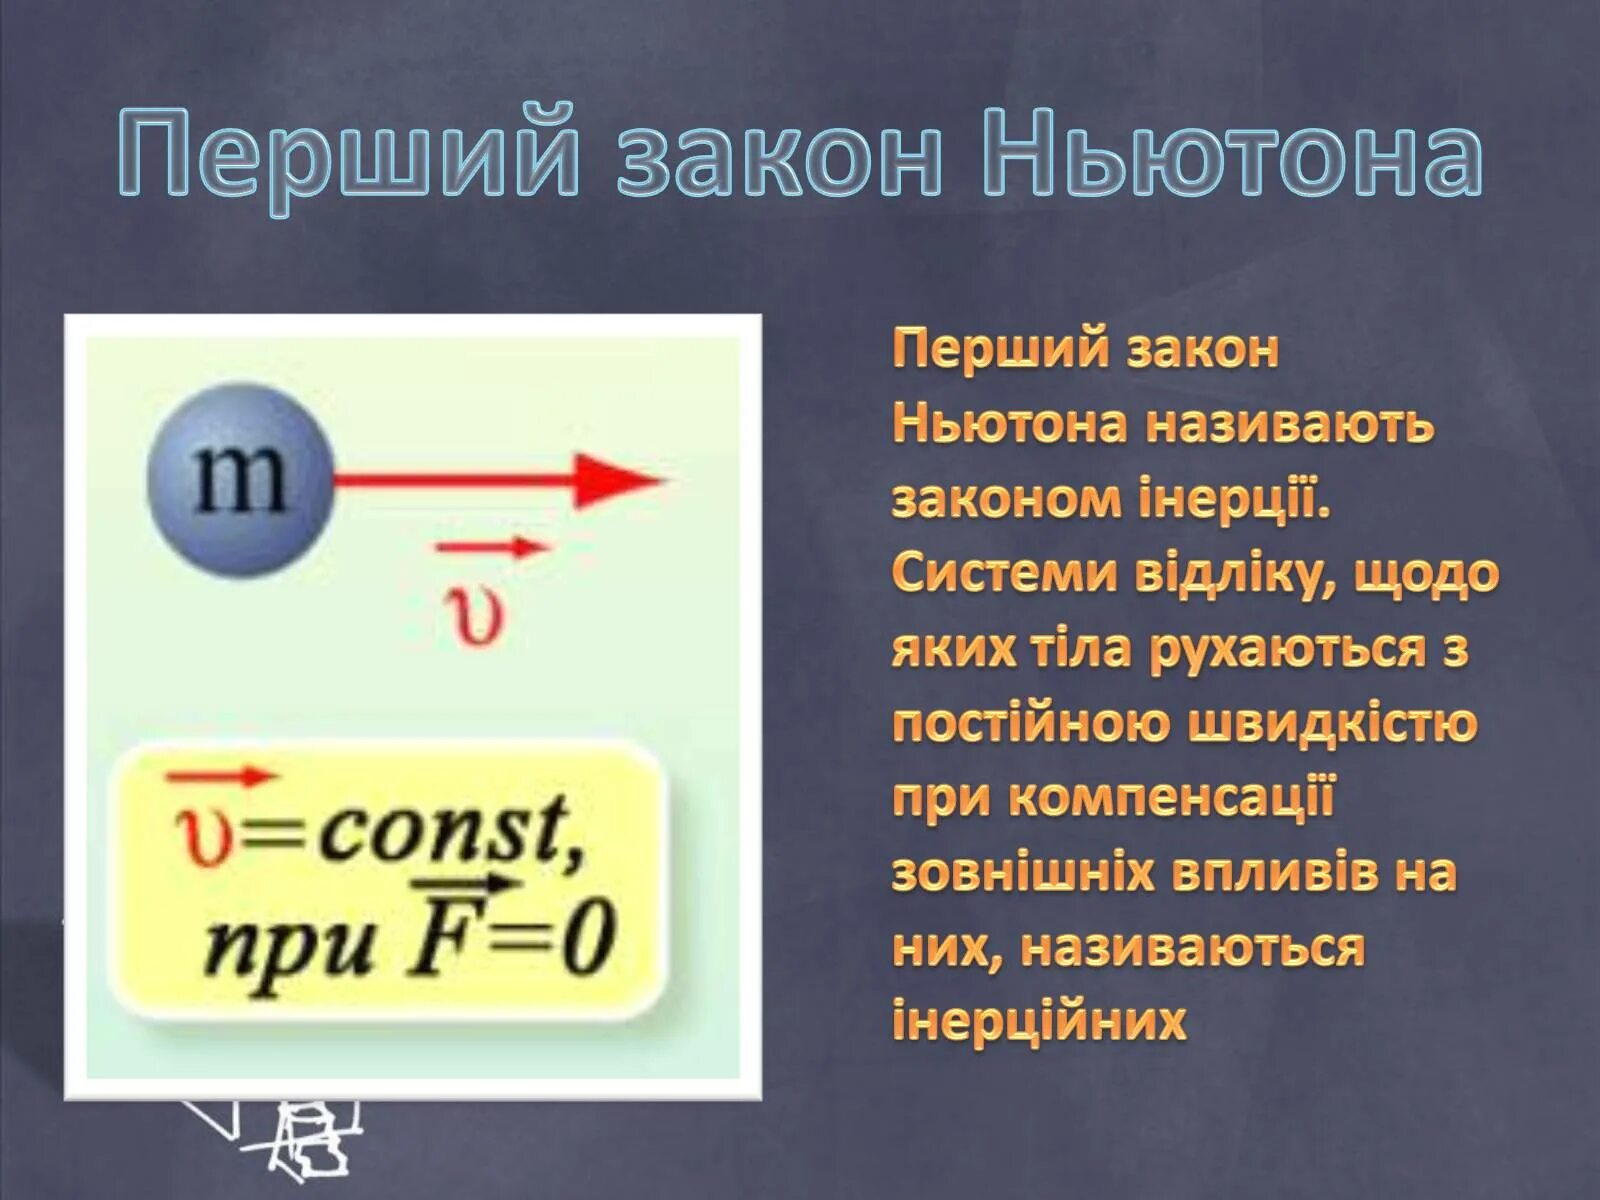 Первому закону ньютона. Законы Ньютона. Первый закон Ньютона формула. Первый закон Ньютона формулировка. Gthdsqзакон Ньютона формула.